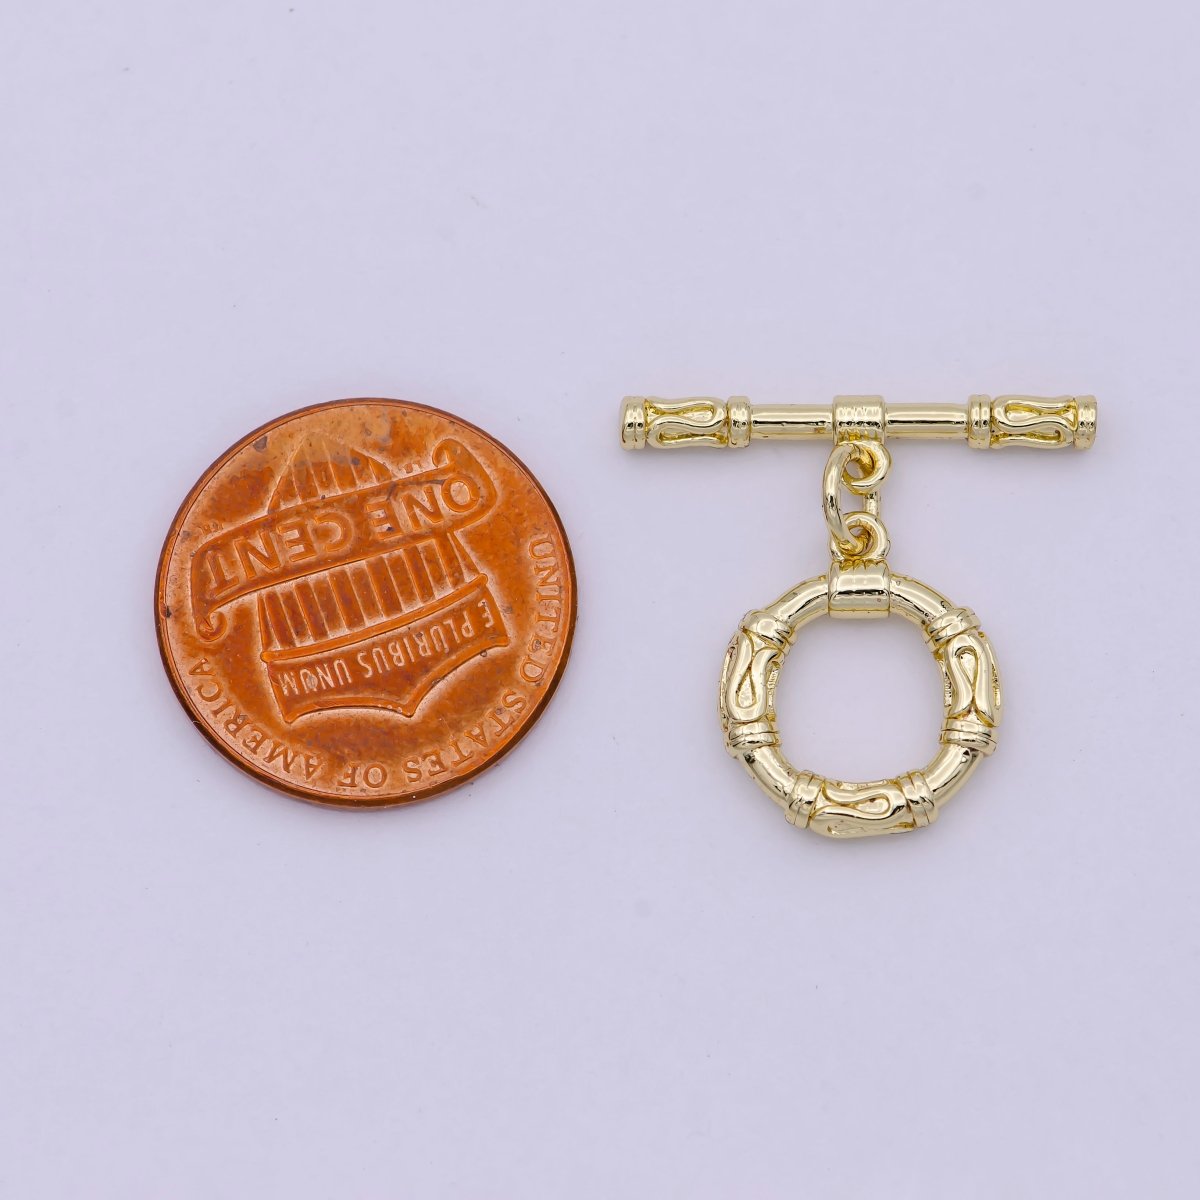 Wholesale Gold Toggle Clasp, OT Clasp Fancy Design OT Clasp Bulk Supply for Bracelet Necklace Component L-629 - DLUXCA